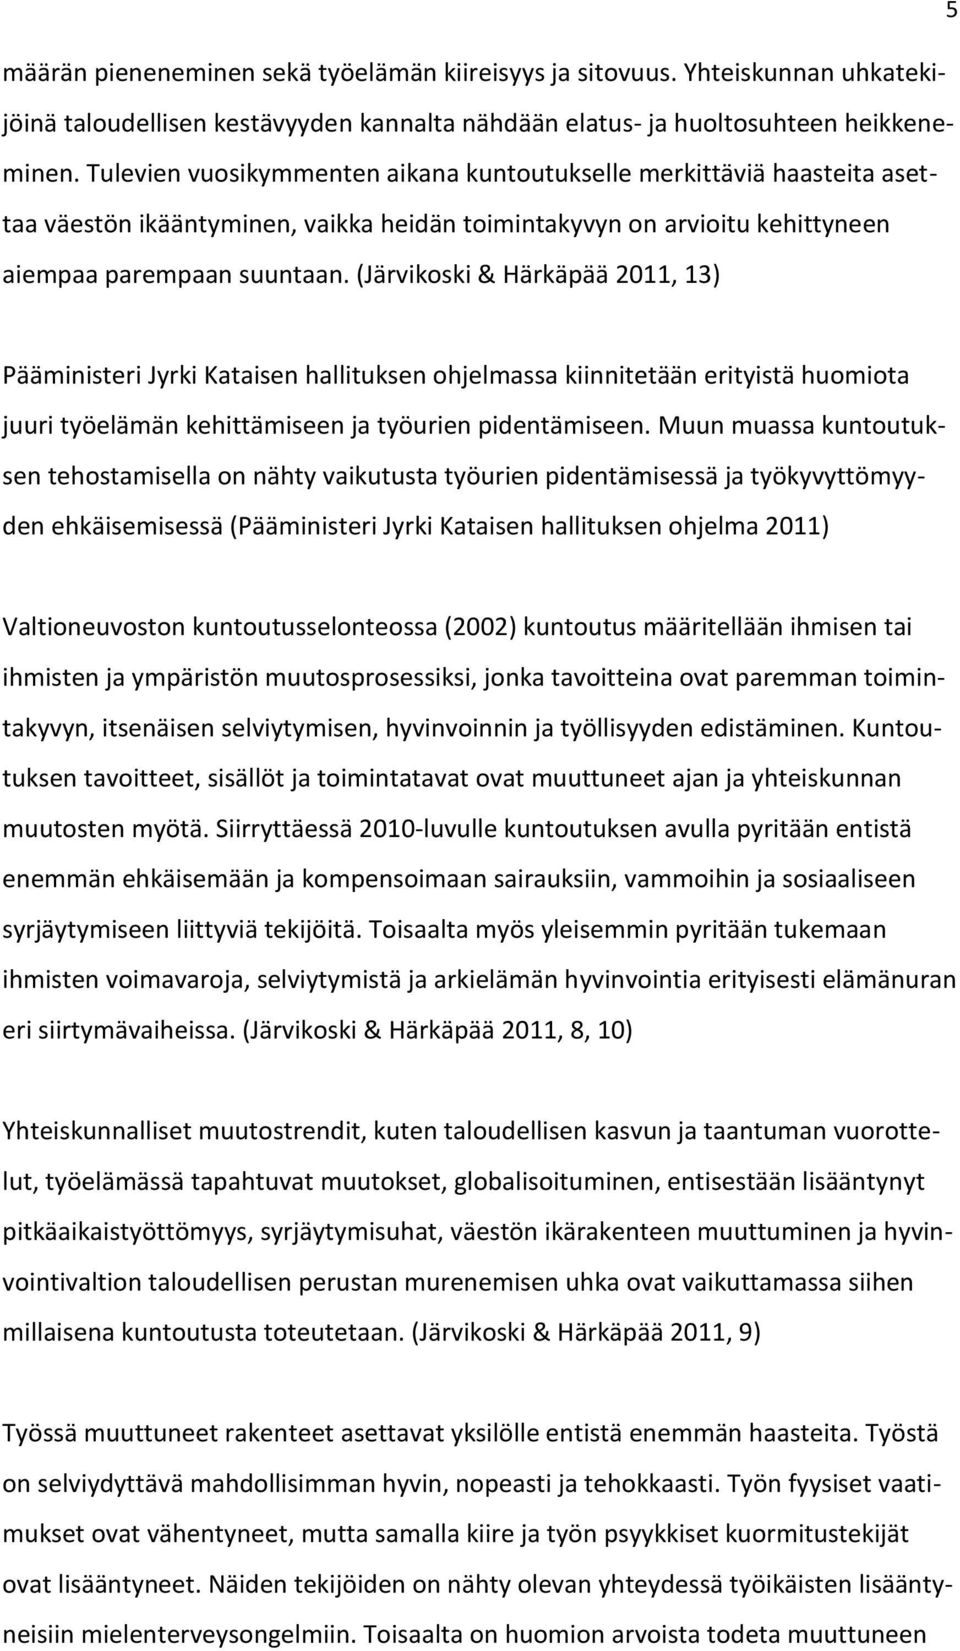 (Järvikoski & Härkäpää 2011, 13) Pääministeri Jyrki Kataisen hallituksen ohjelmassa kiinnitetään erityistä huomiota juuri työelämän kehittämiseen ja työurien pidentämiseen.